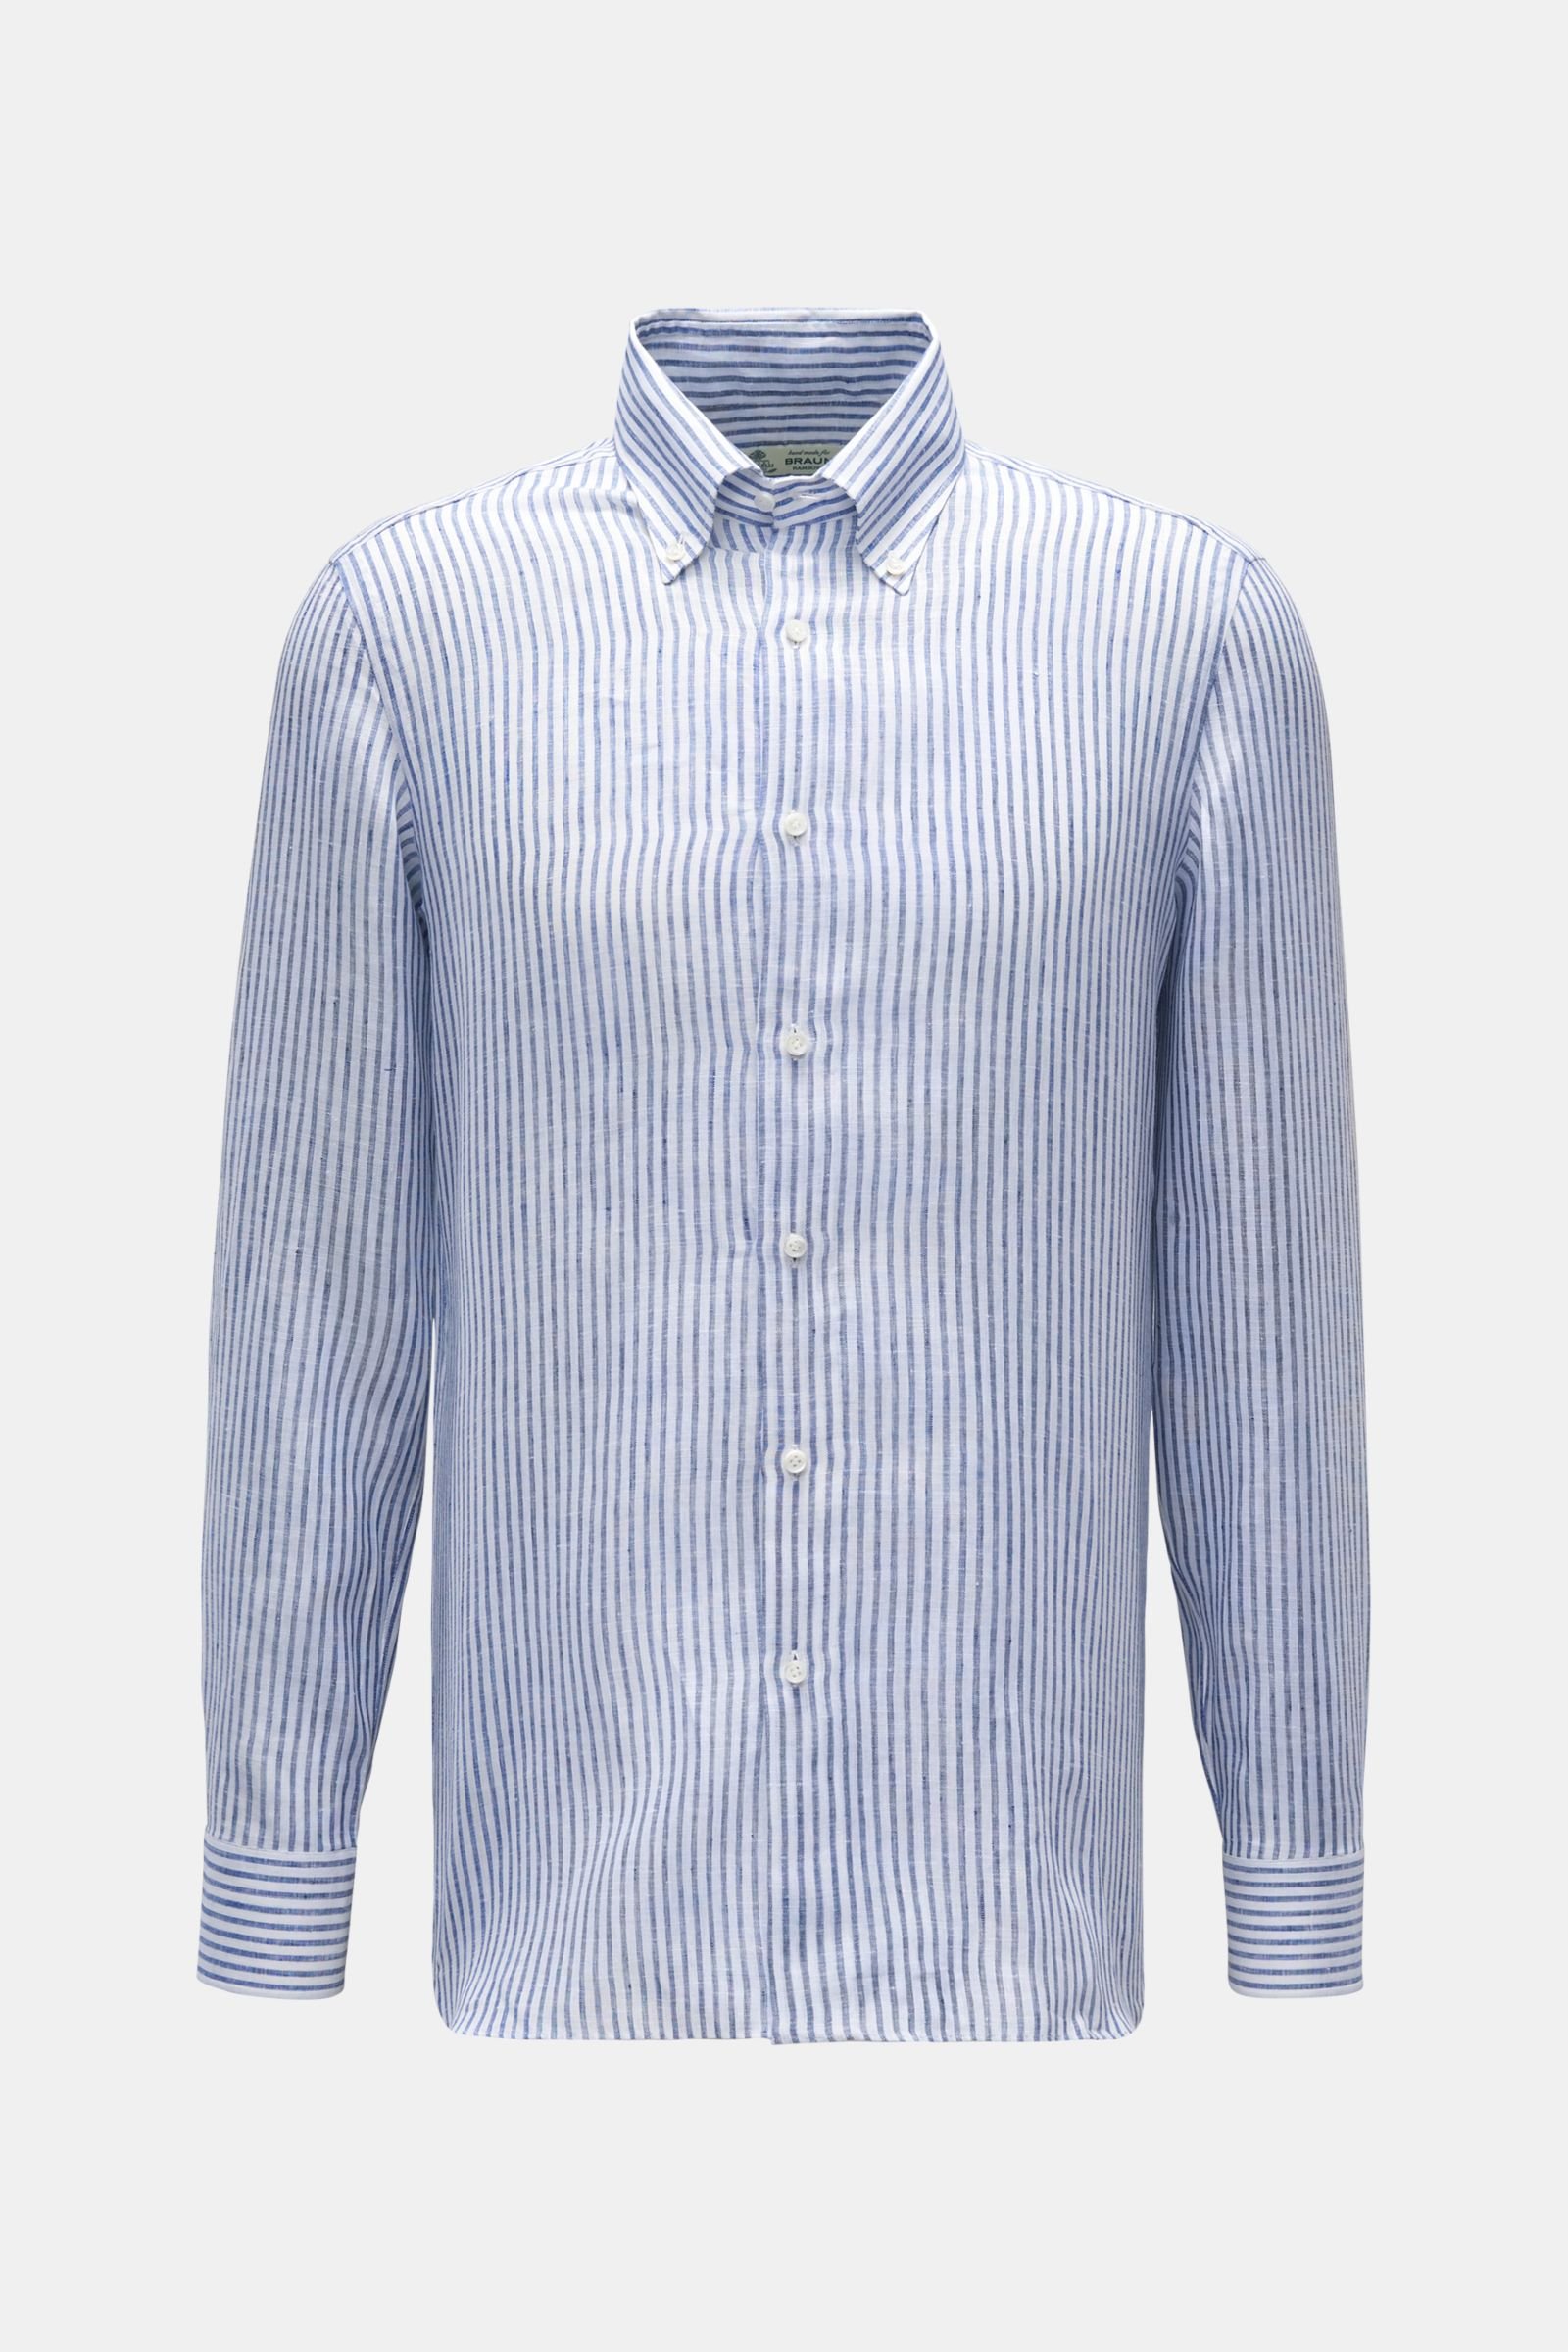 Leinenhemd 'Gable' Button-Down-Kragen dunkelblau/weiß gestreift